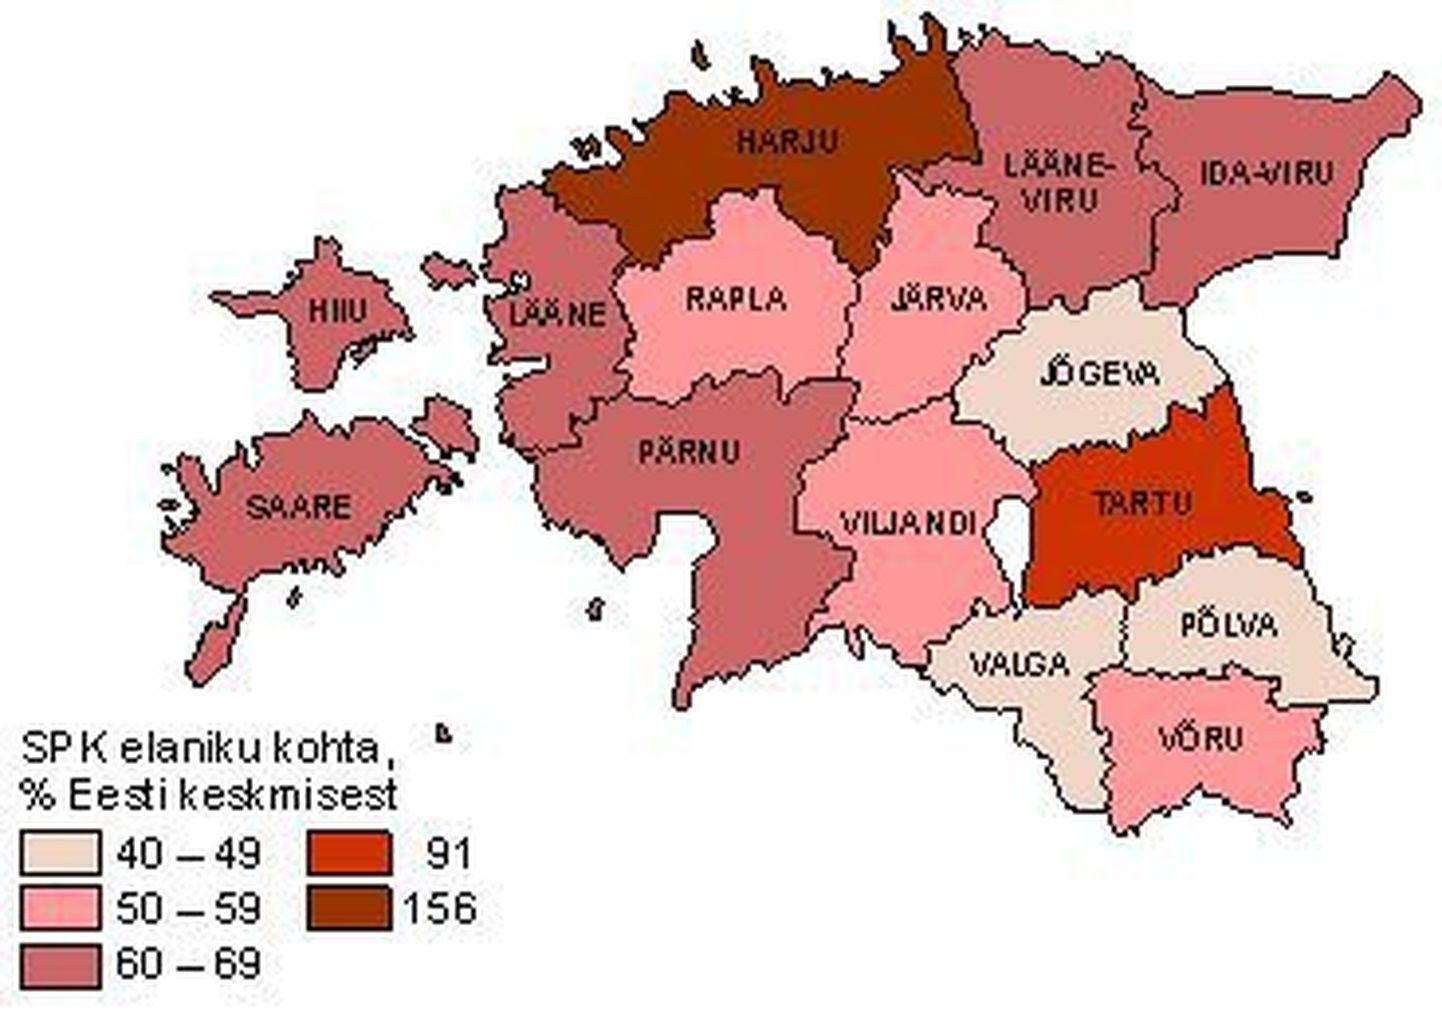 SKT elaniku kohta maakonniti aastal 2009(protsent Eesti keskmisest)